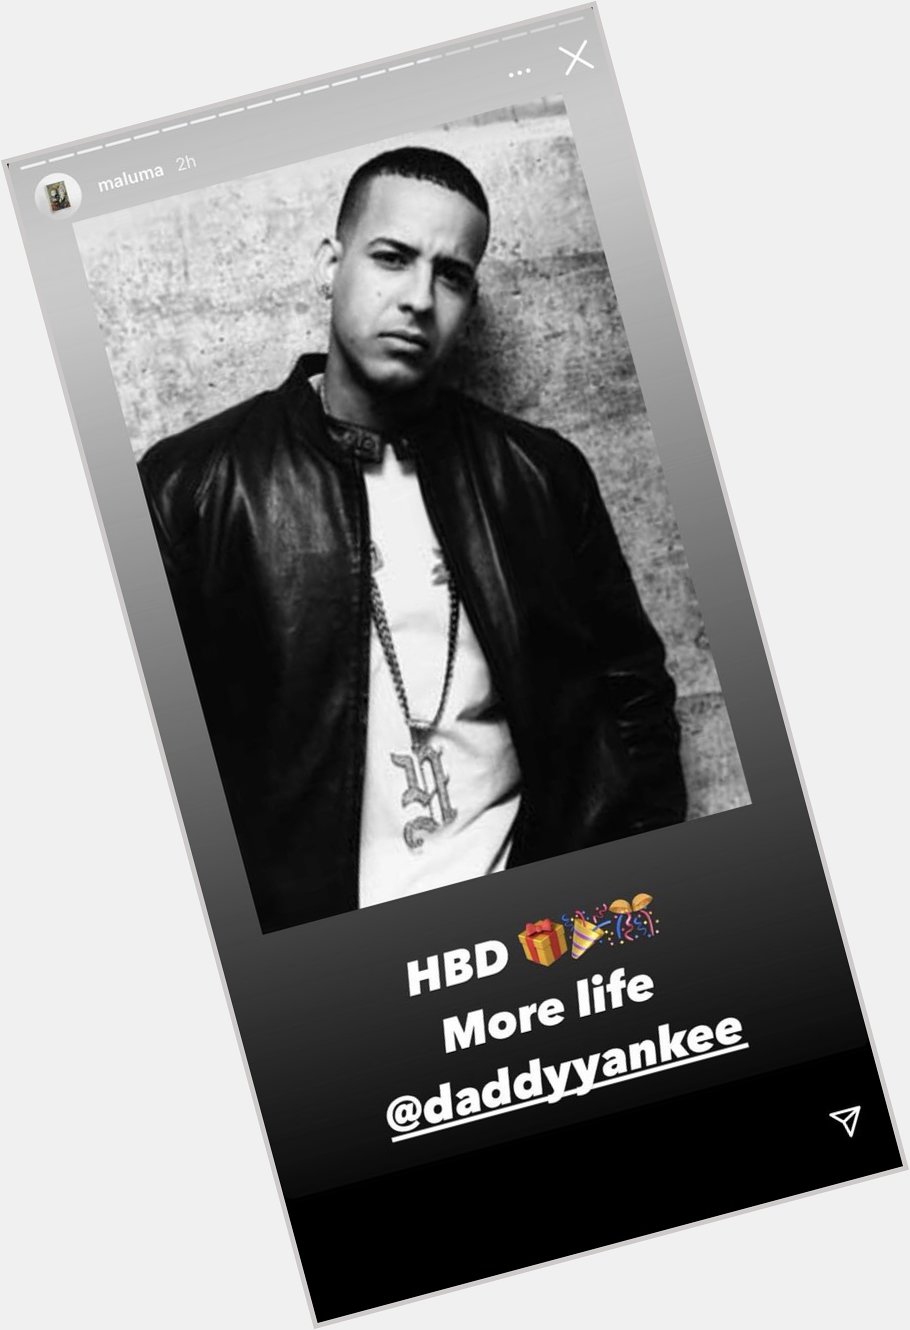 Not Maluma wishing happy birthday to Daddy Yankee but not Shakira 